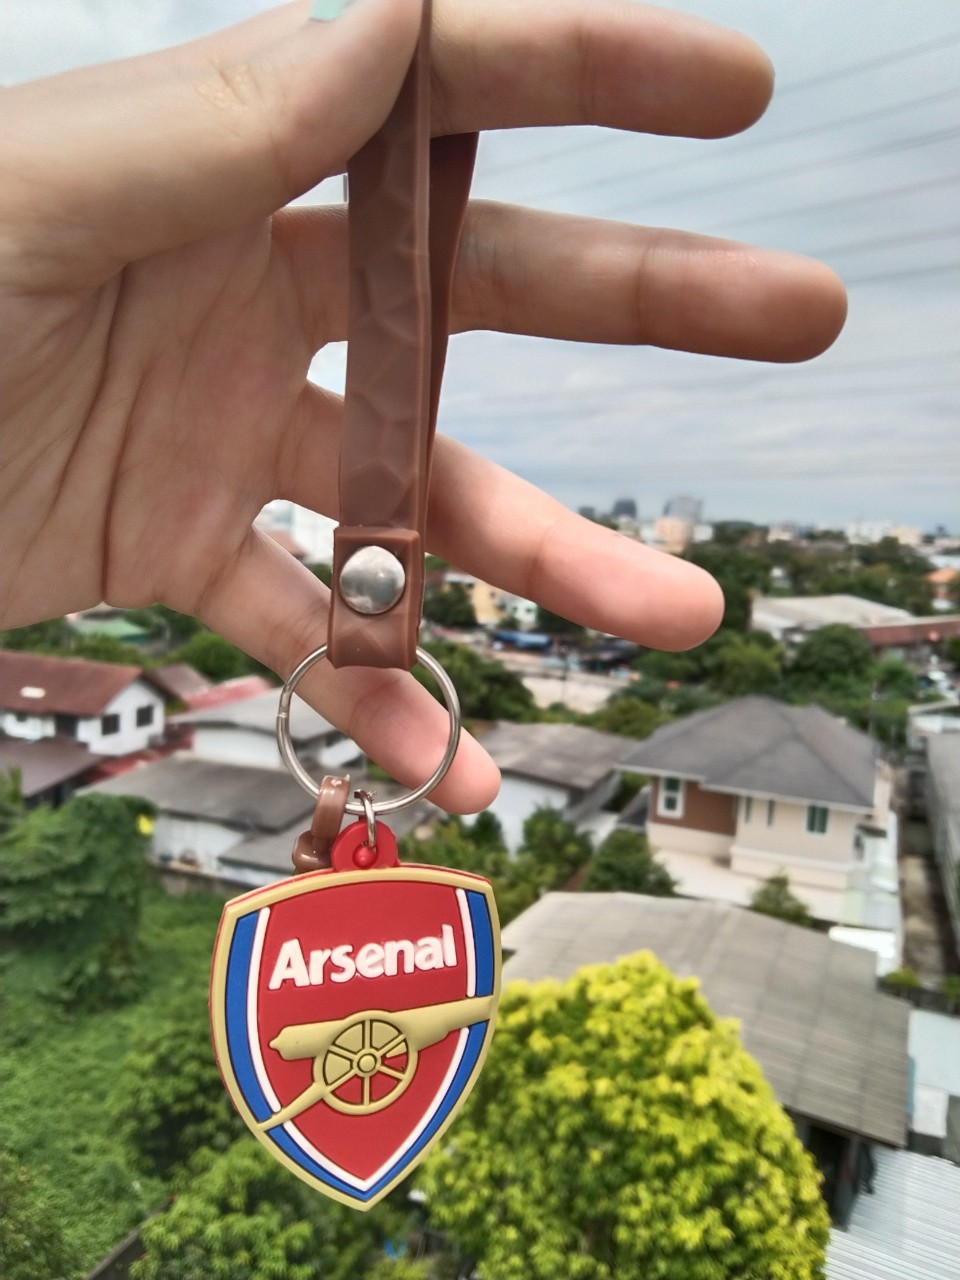 พวงกุญแจอาร์เซนอล ตราสโมสรฟุตบอล อาร์เซนอล Arsenal Fc Keyring พวงกุญแจ